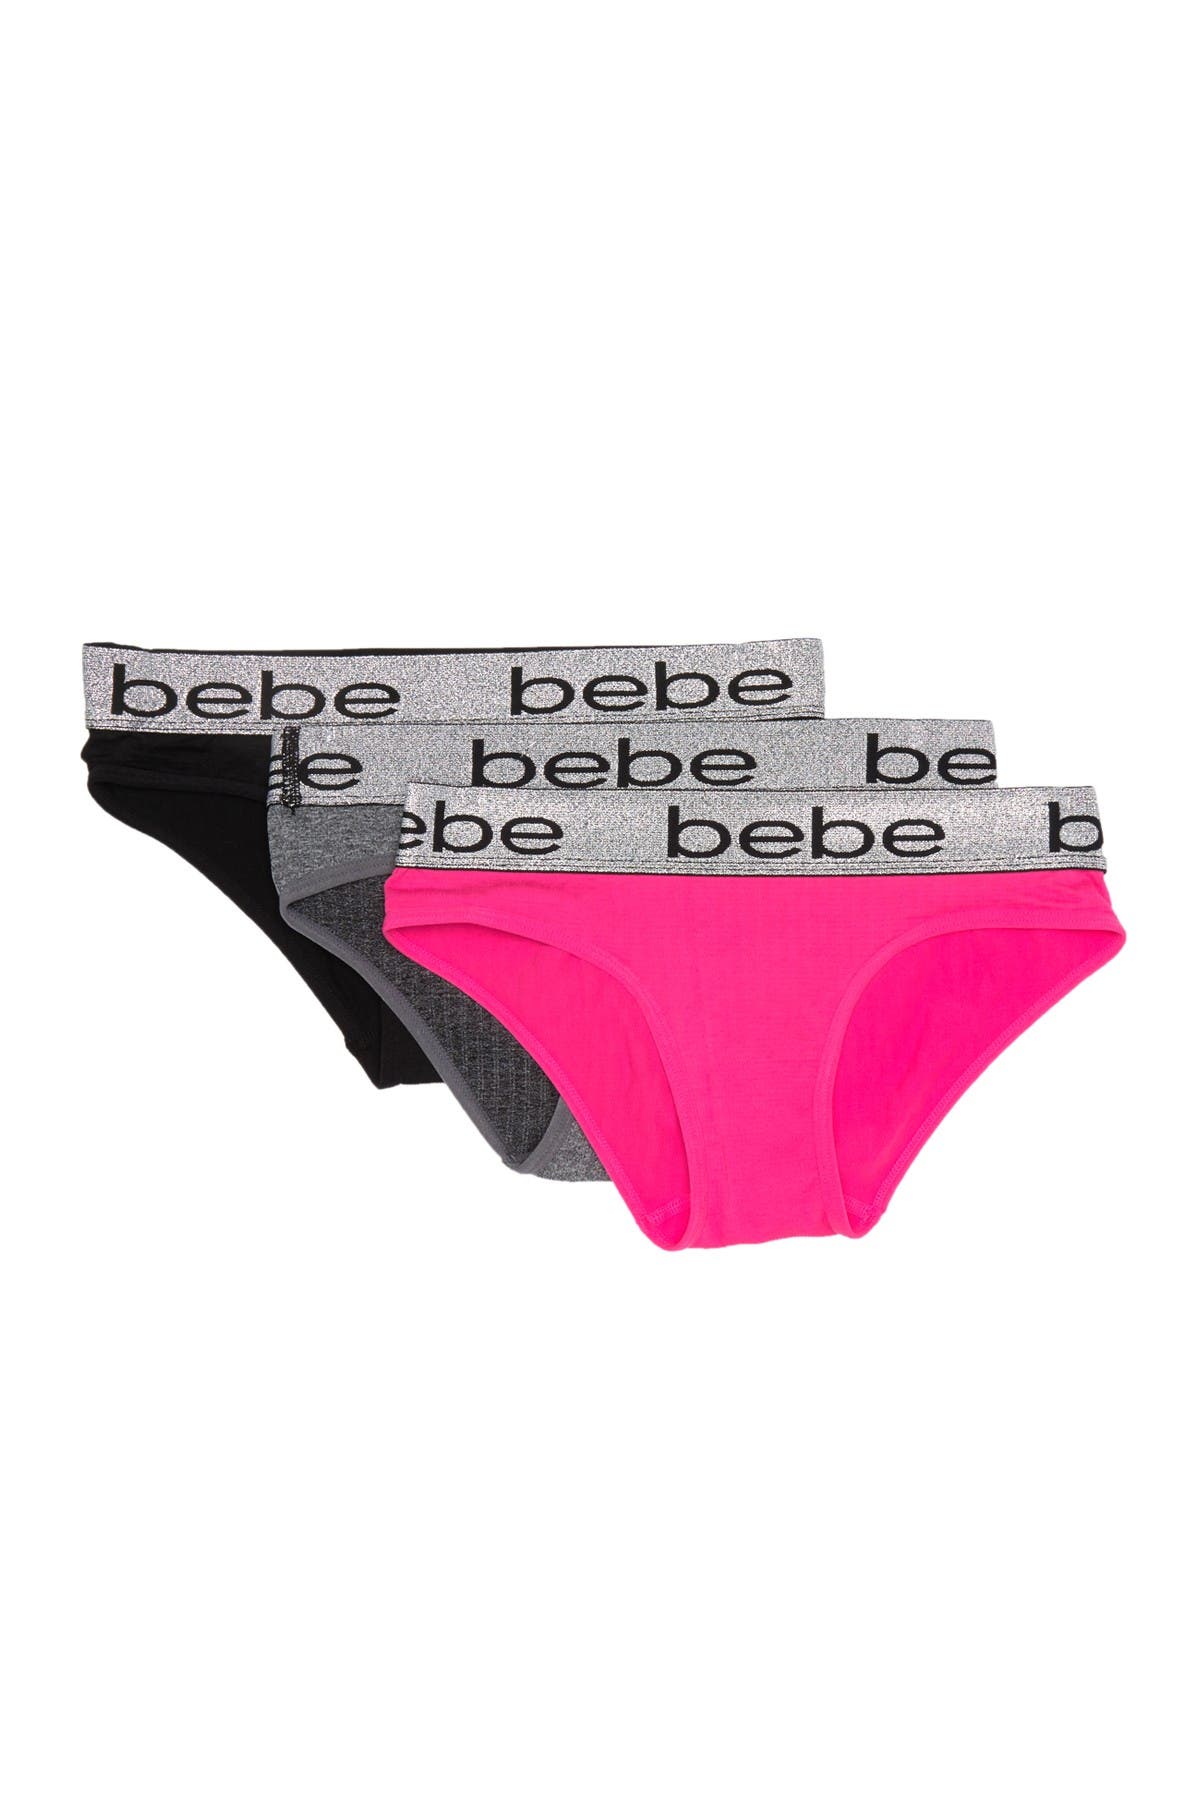 Bebe Logo Seamless Bikini Panties Pack Of 3 Nordstrom Rack